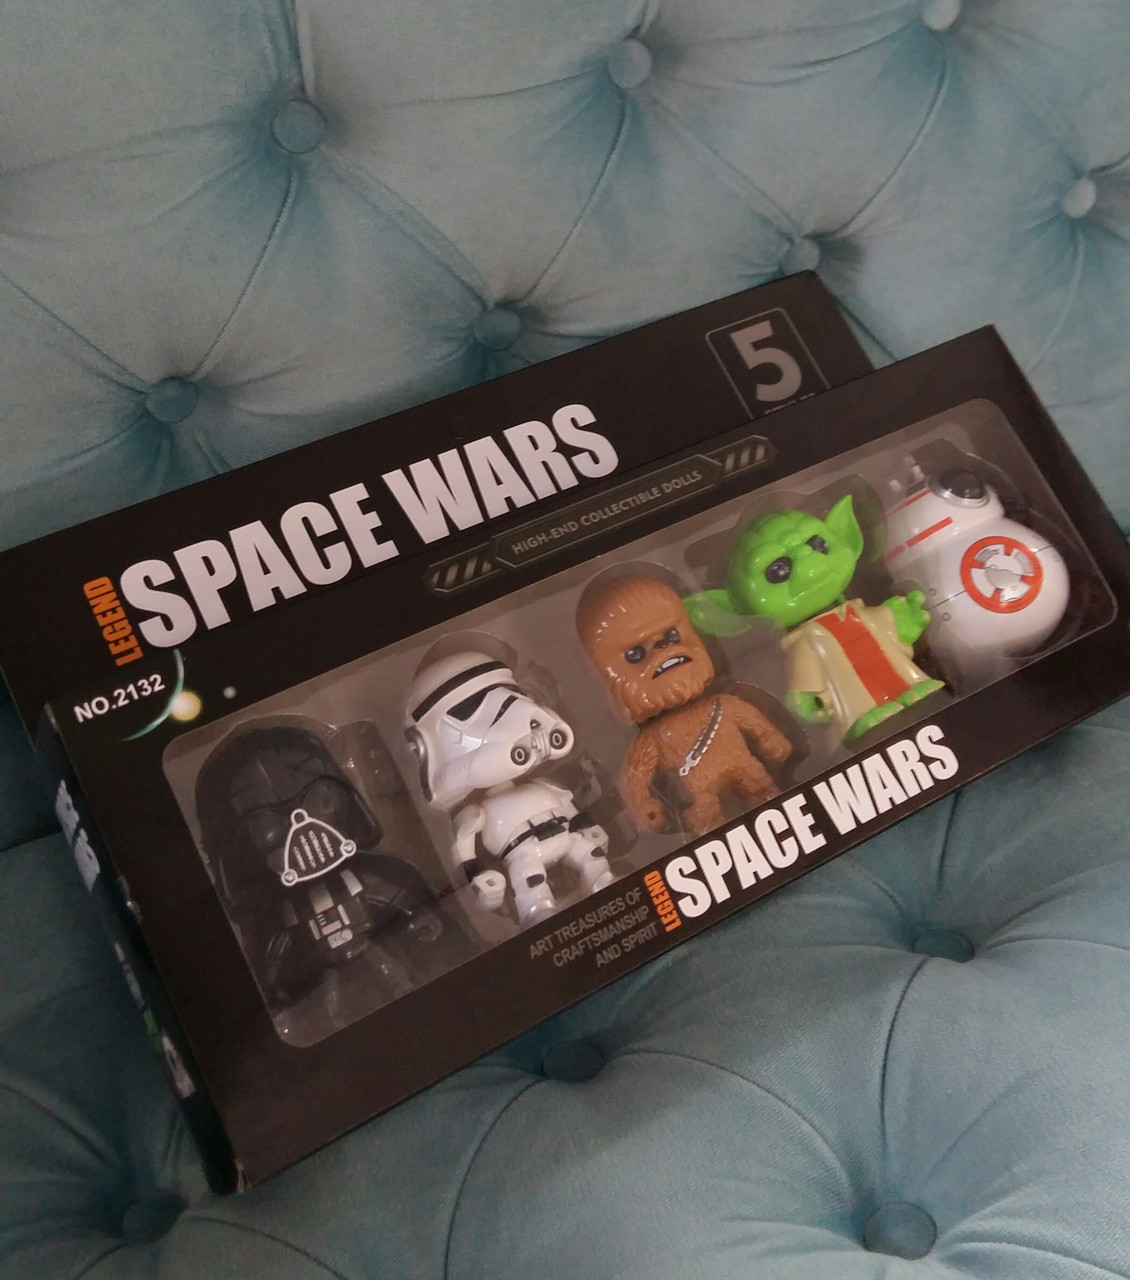 

Герои звездных войн 5 героев в коробке, подвижная голова, Space Wars 2132